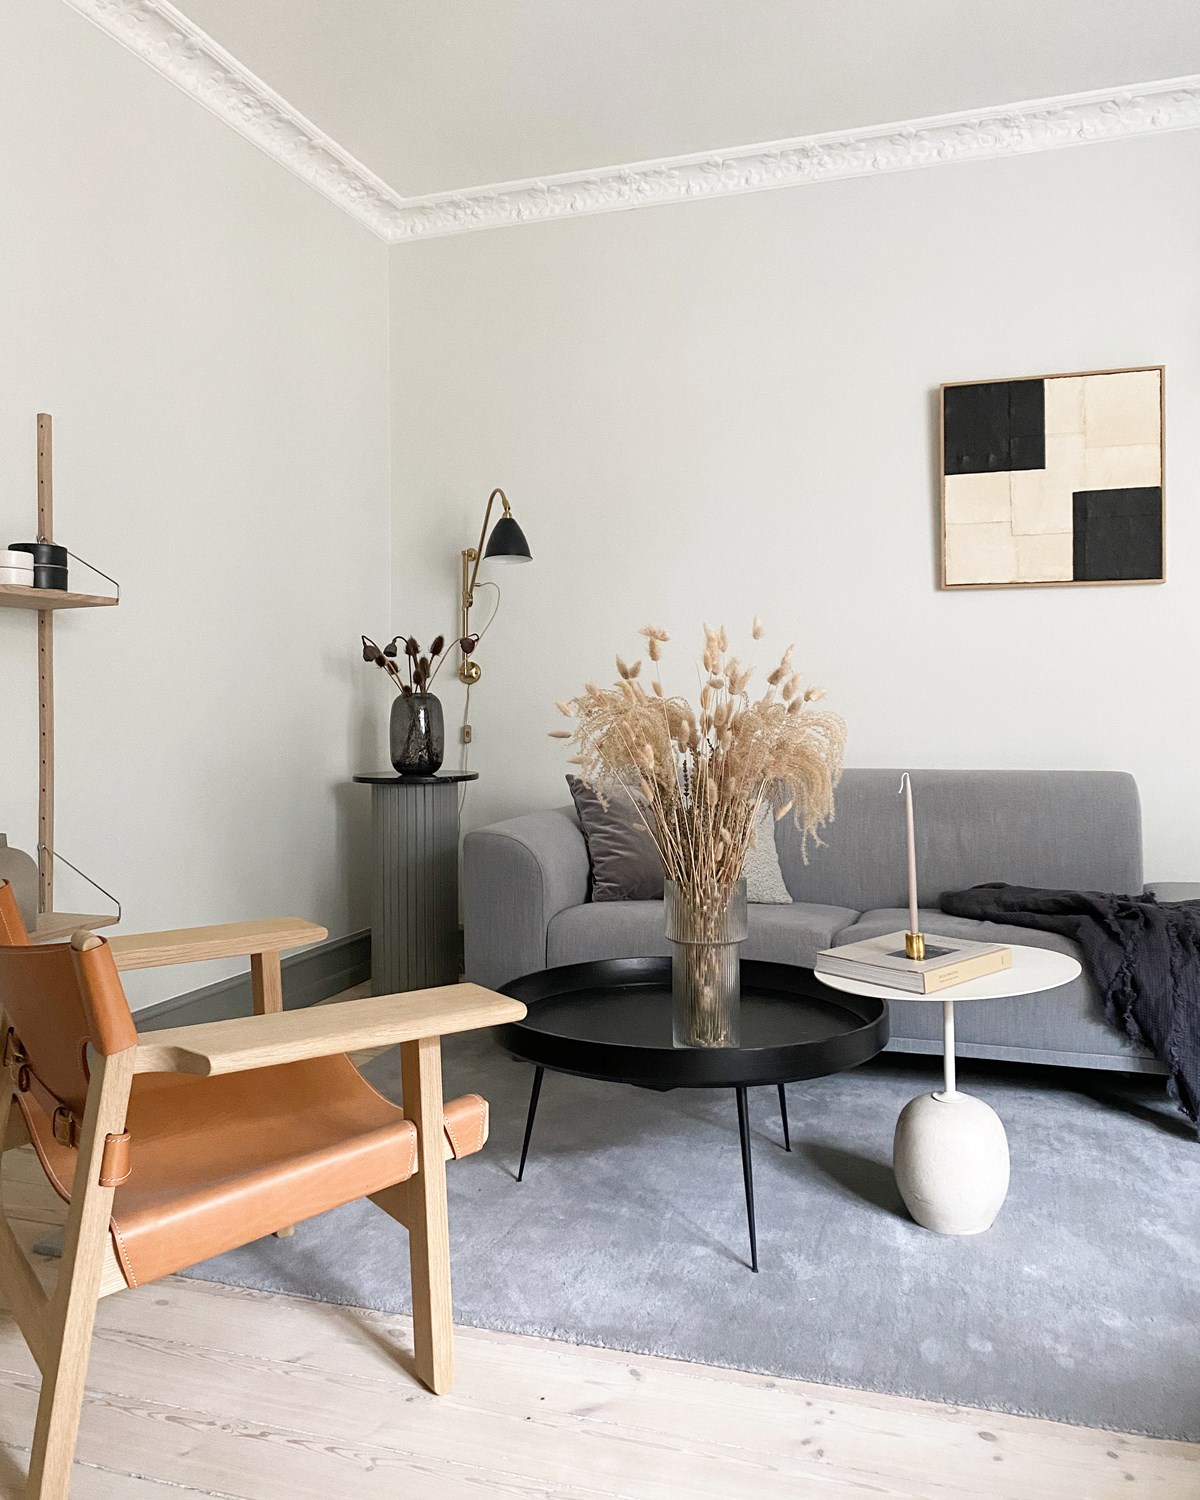 Marie-Louises stue er holdt i neutrale toner, men gjort personlig med DBA-fund og hjemmelavede møbler.